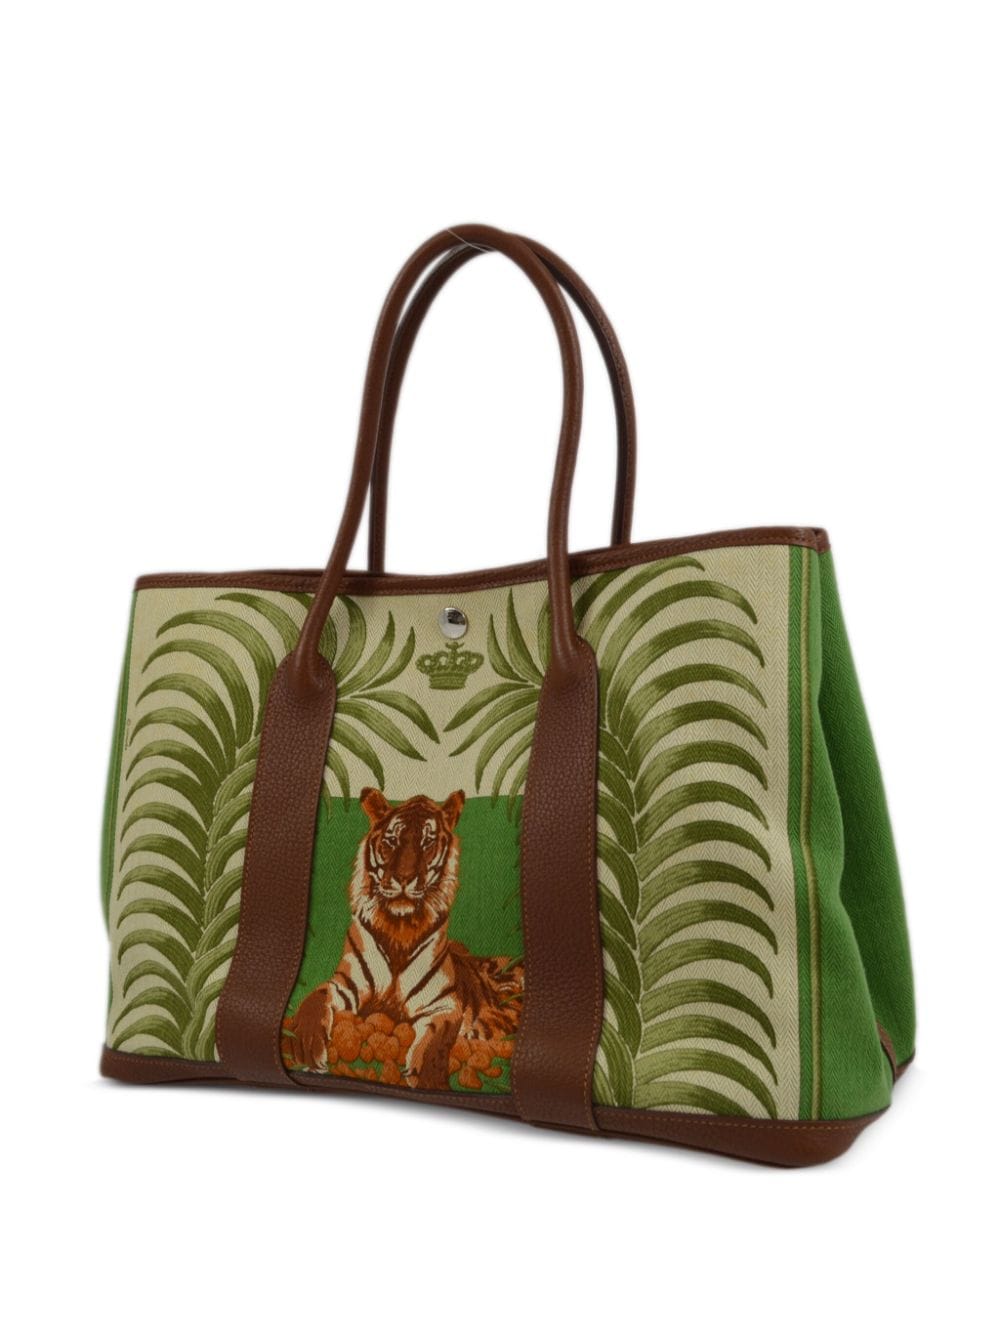 Hermès 2010 pre-owned Tigre Royal Garden Party 36 handbag - Bruin